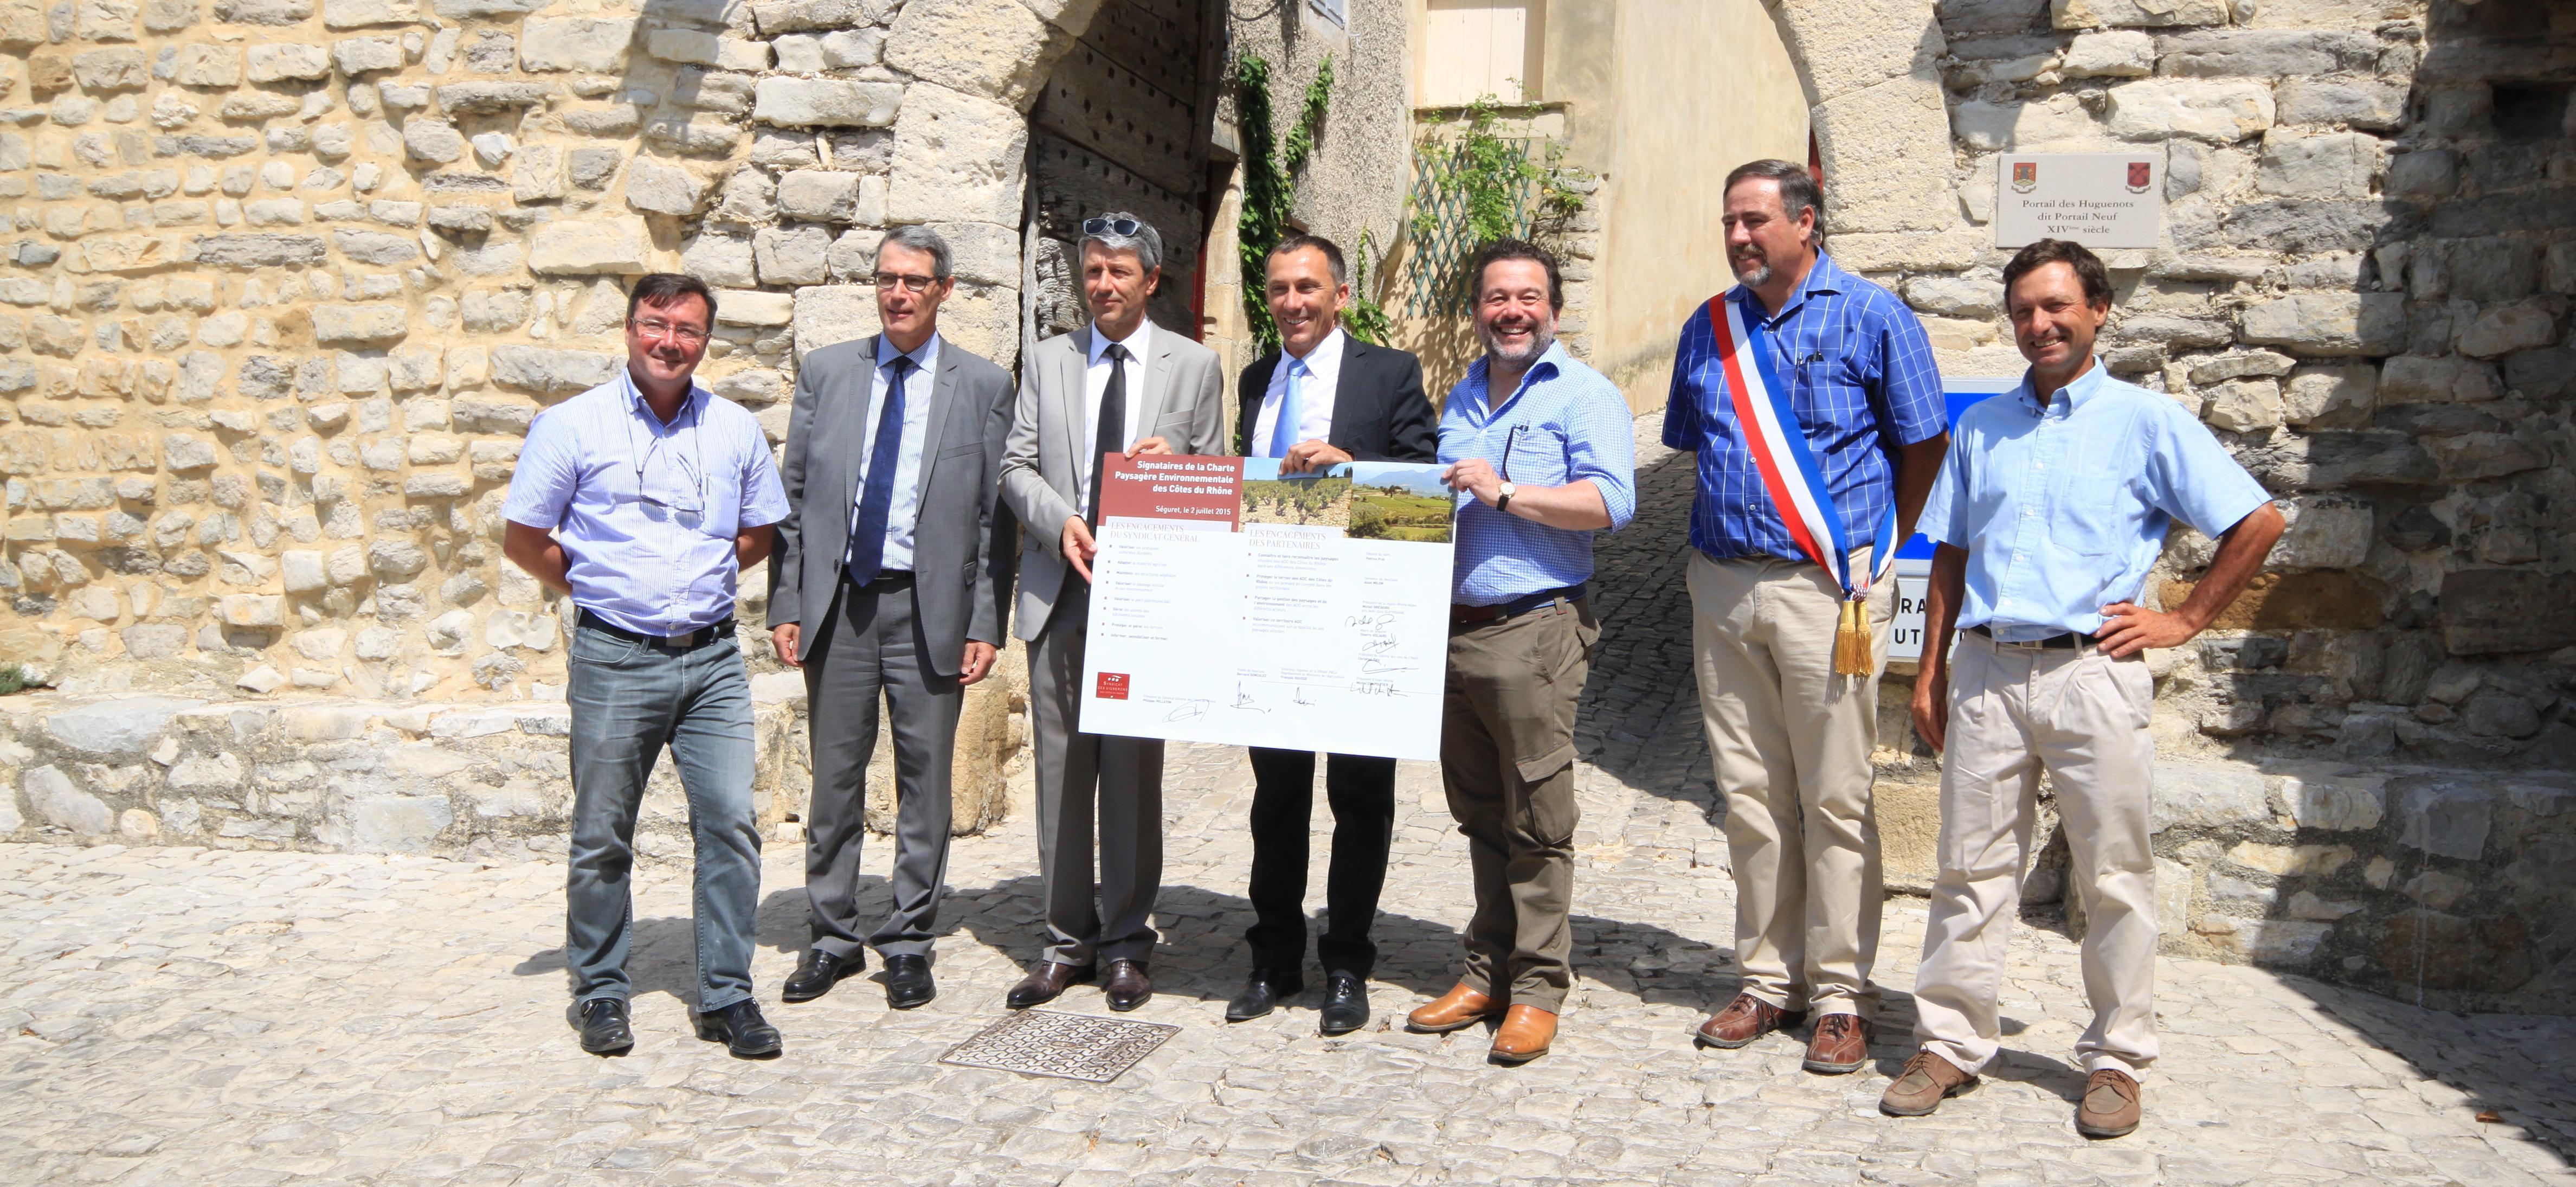 Signataires de la Charte paysagère environnementale des Côtes du Rhône